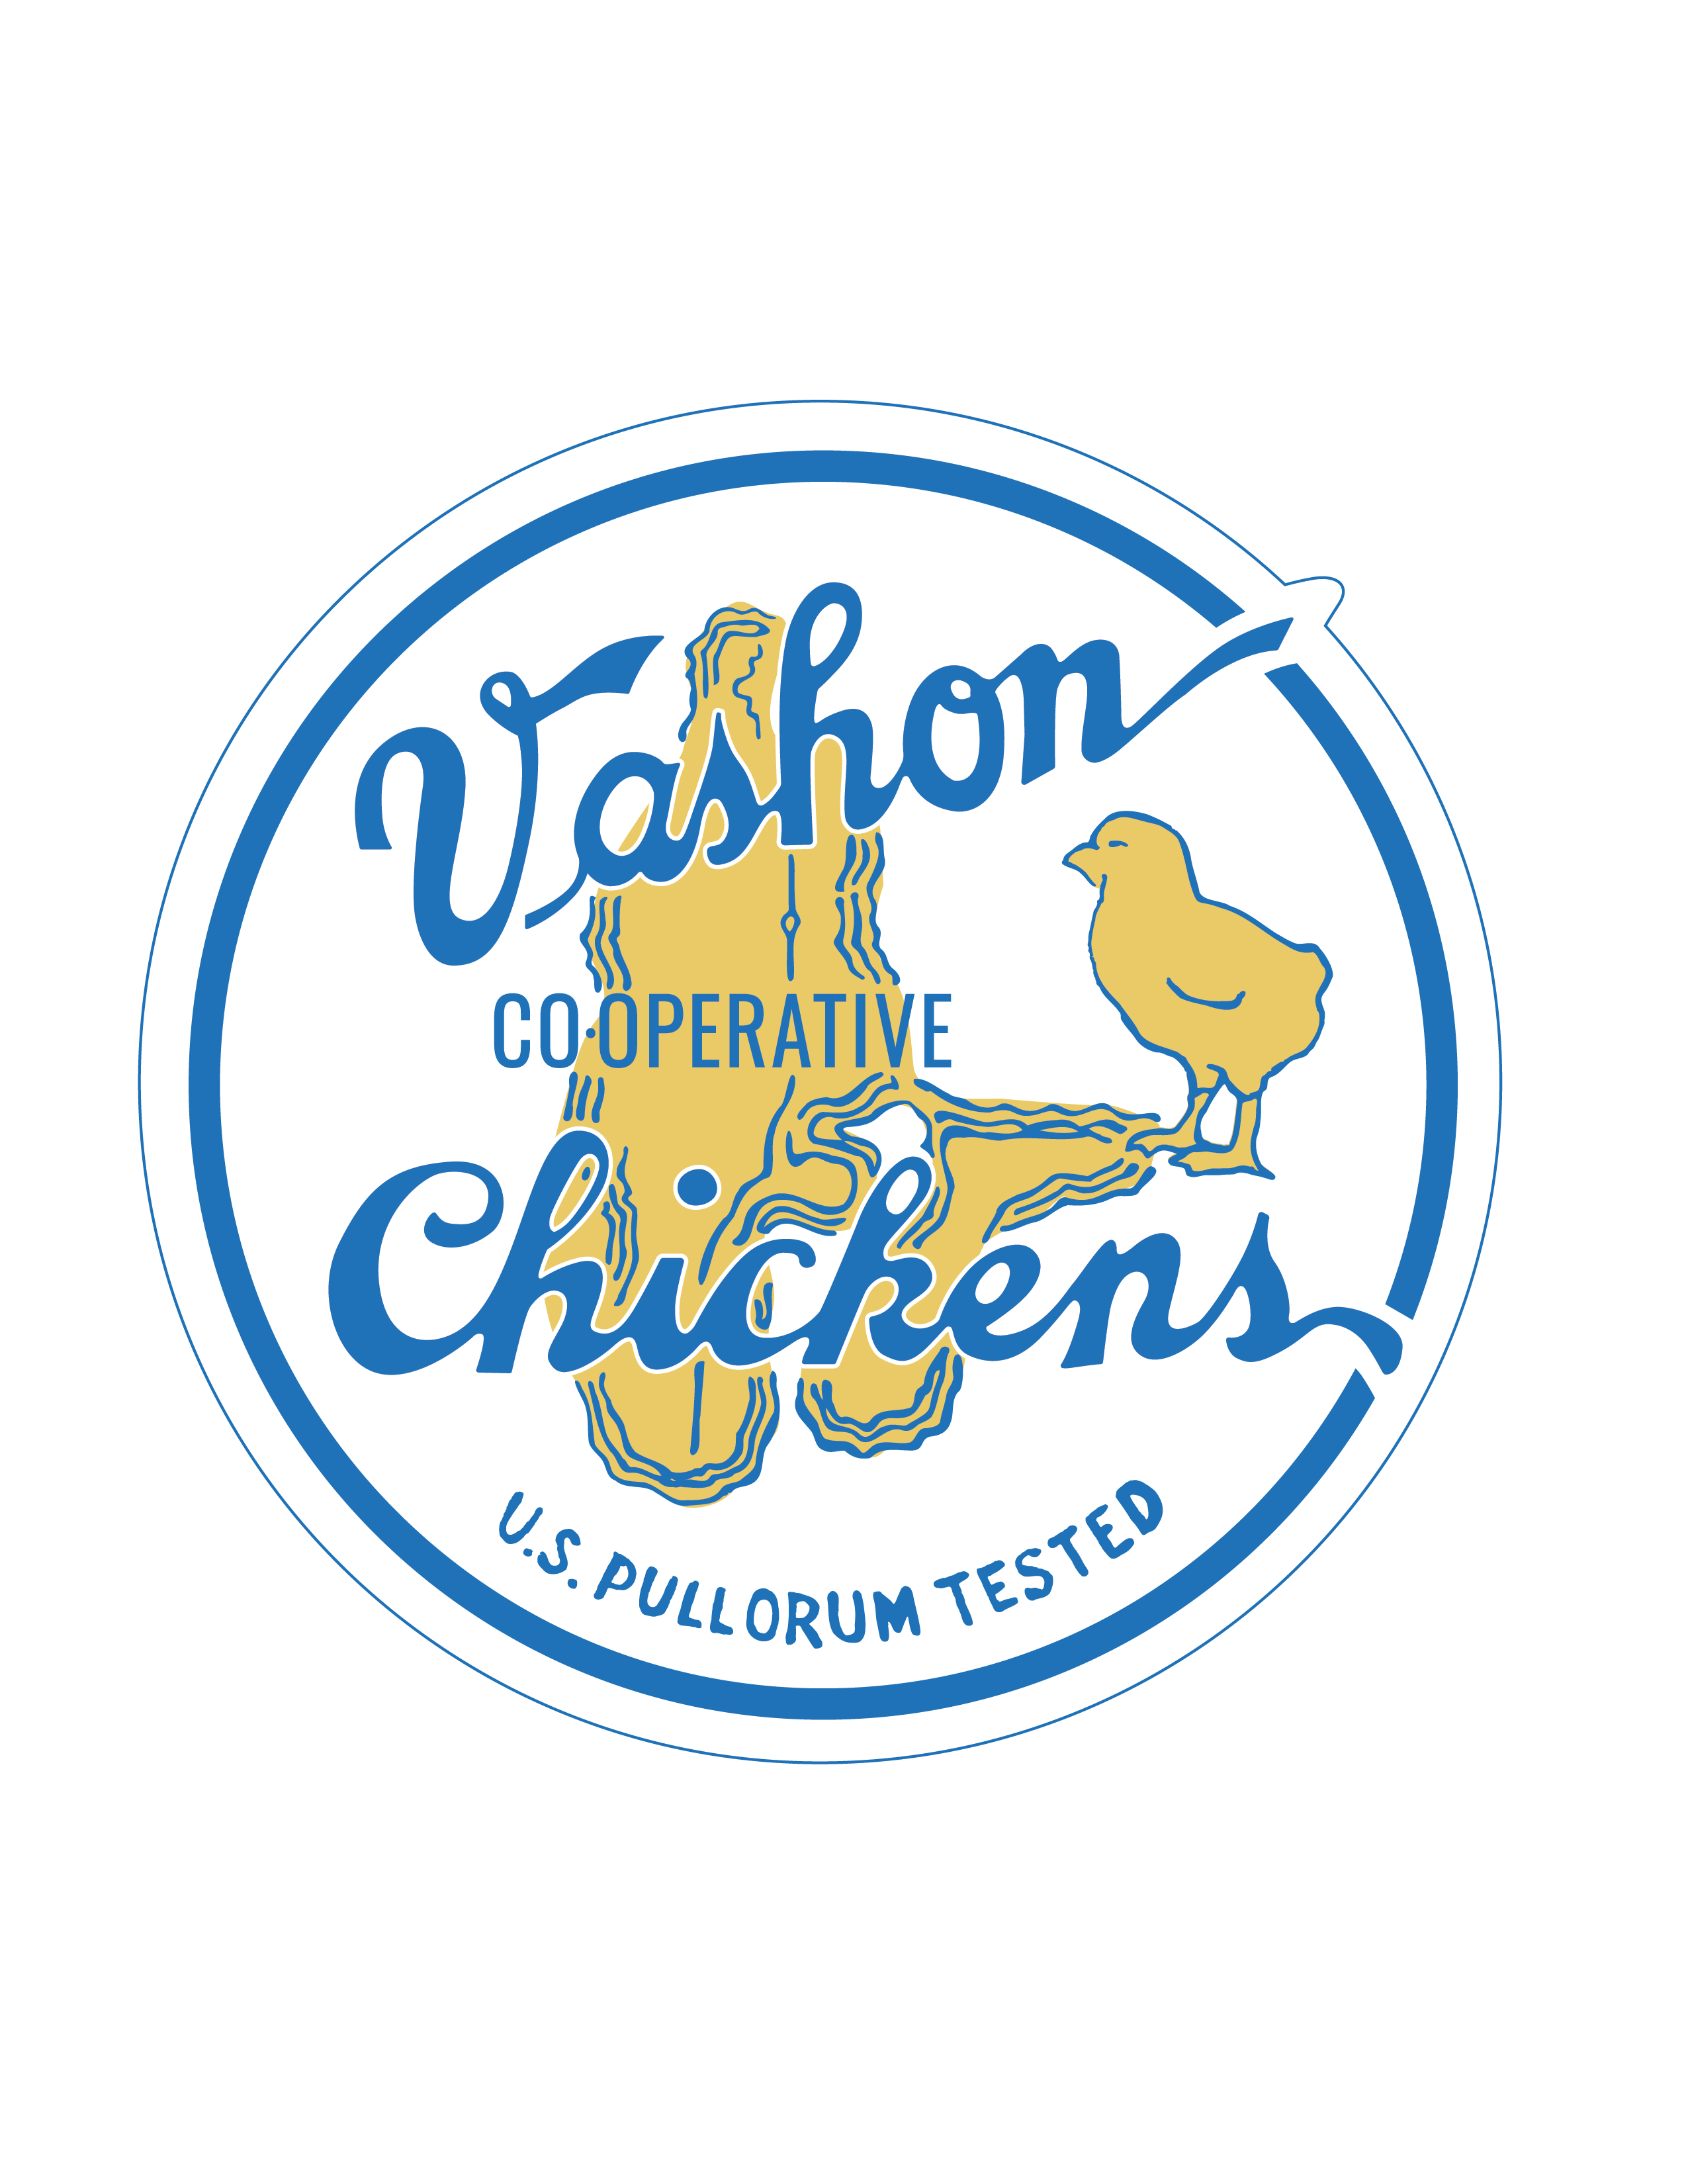 Vashon_Chicken_Graphic-02